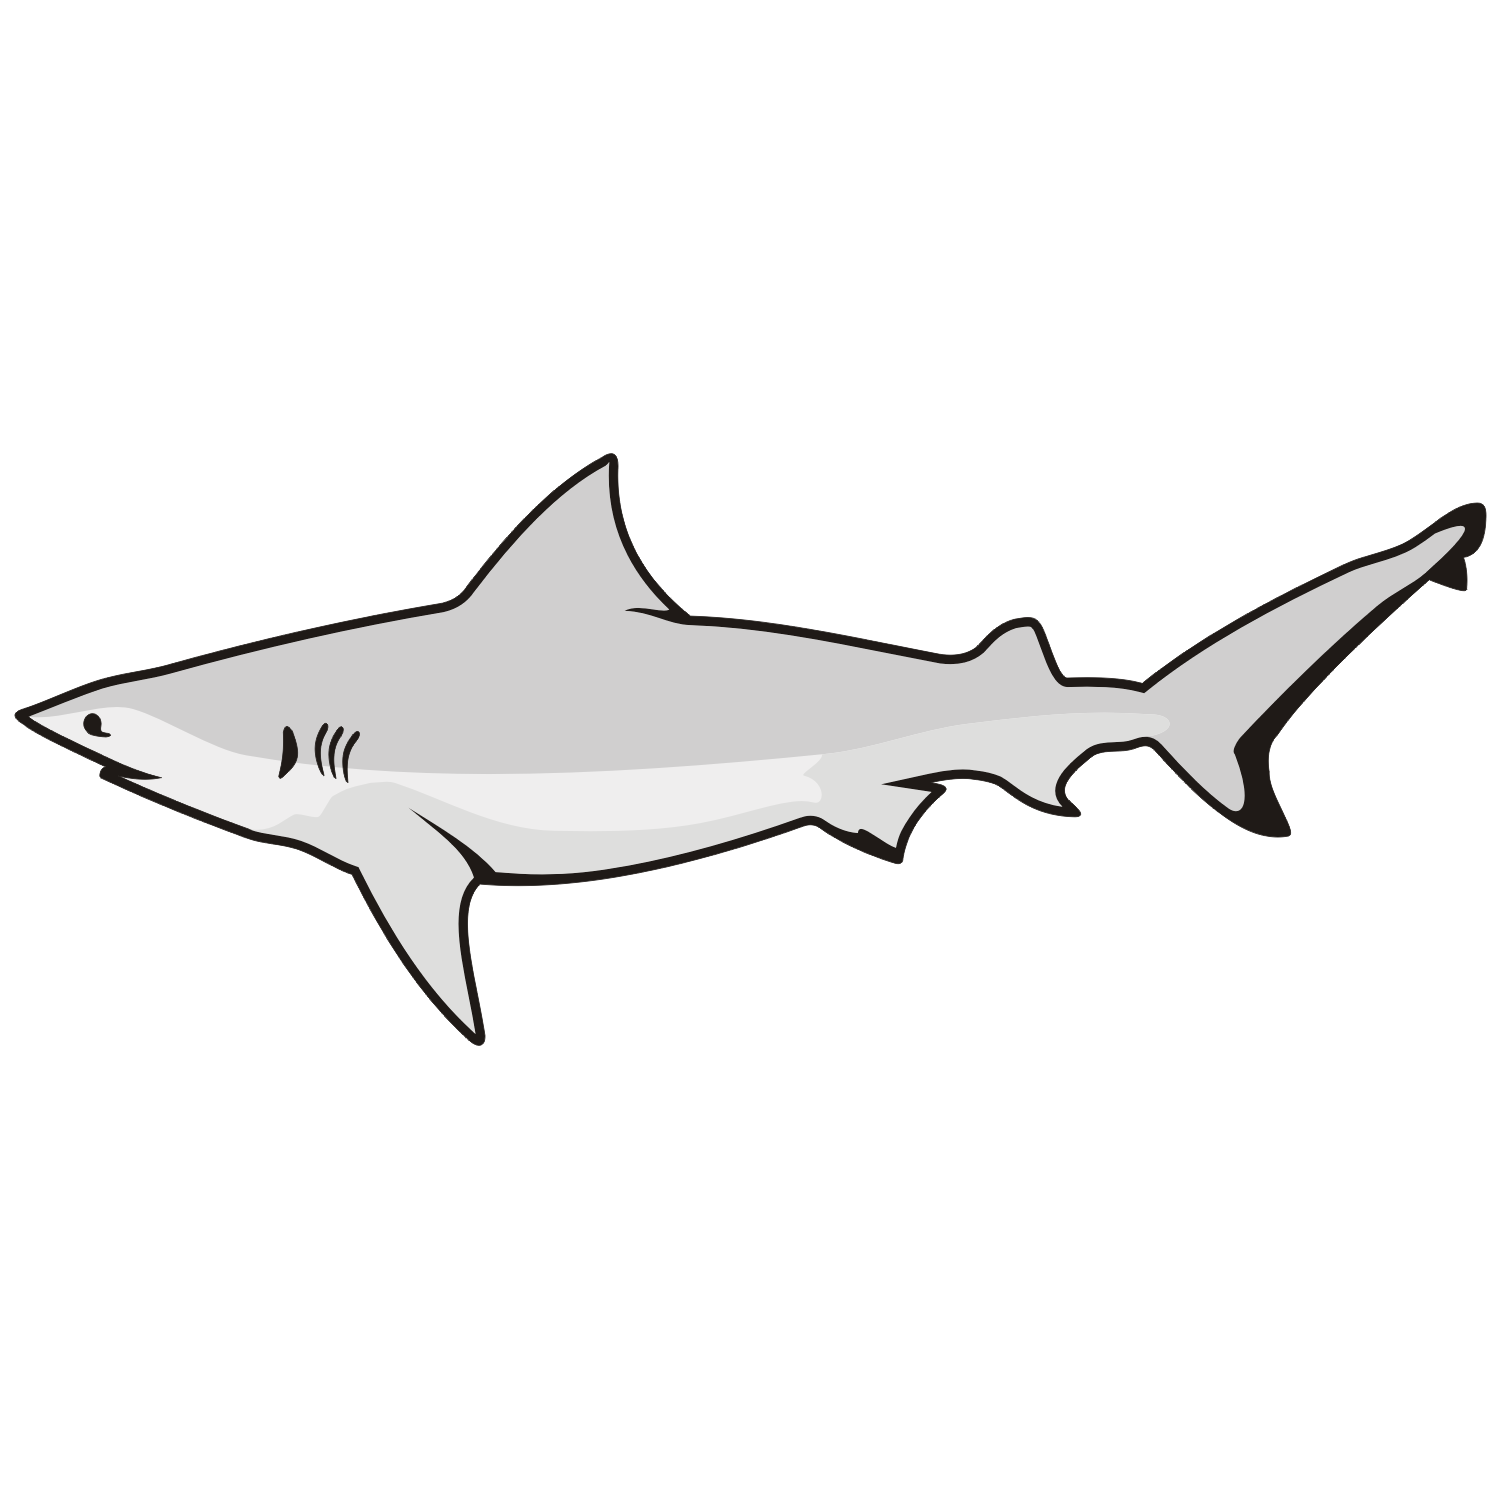 White Shark Free Vector - ClipArt Best